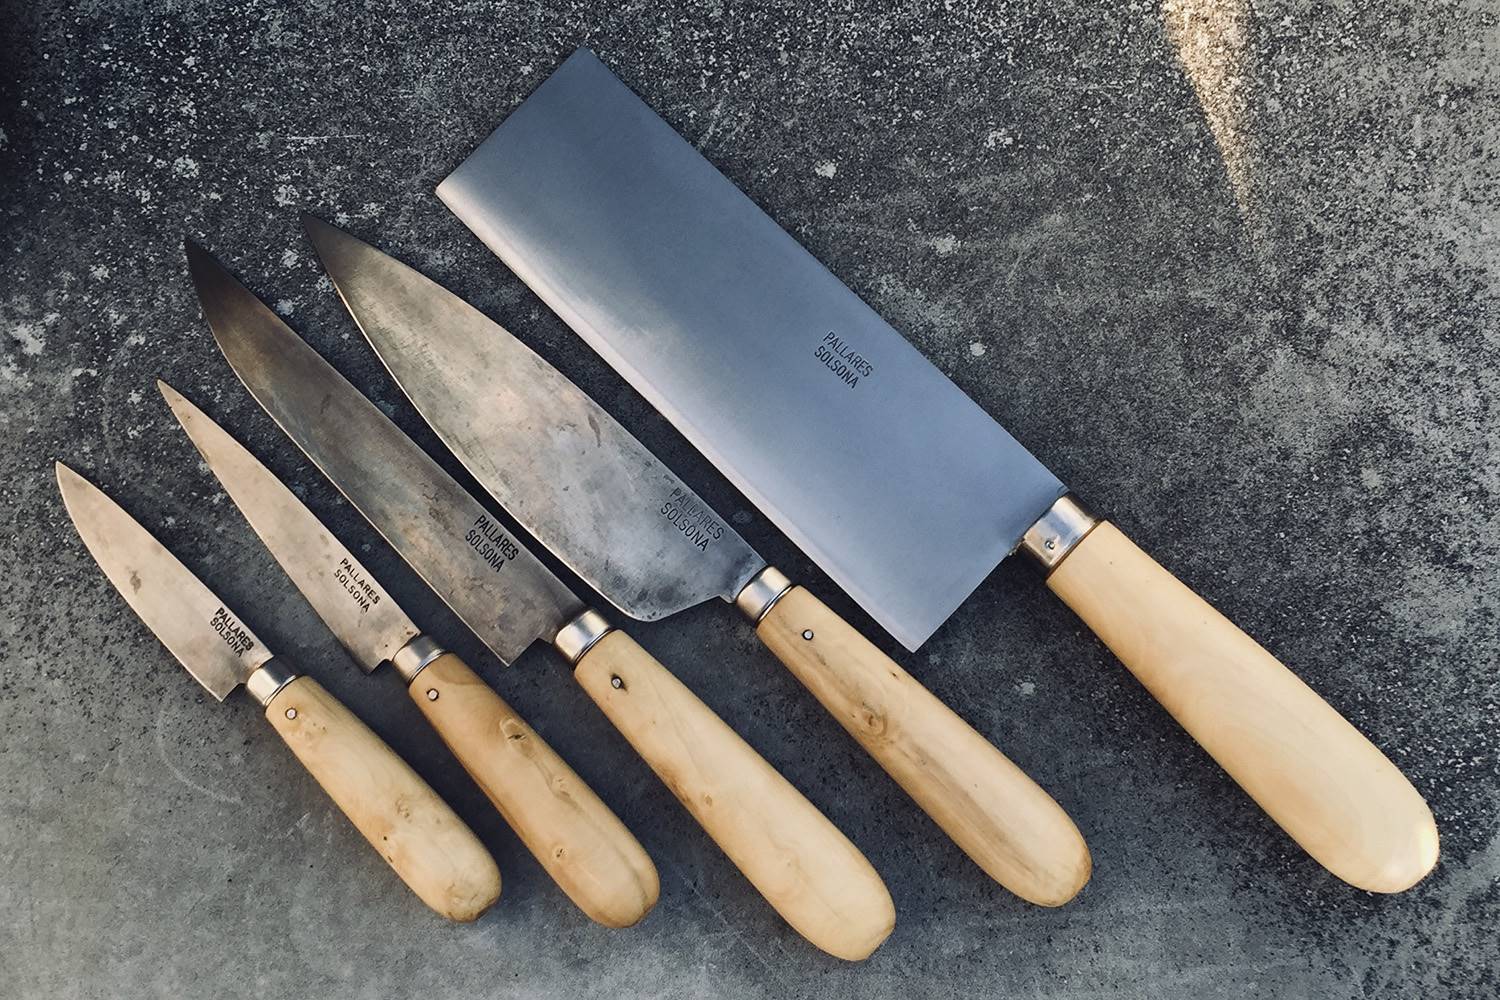 artesanía pallarés solsona. Cada uno de los cuchillos de la marca Pallarés se fabrica a mano con materiales como el hierro (acero carbono) de la hoja y la madera de boj de la empuñadura.